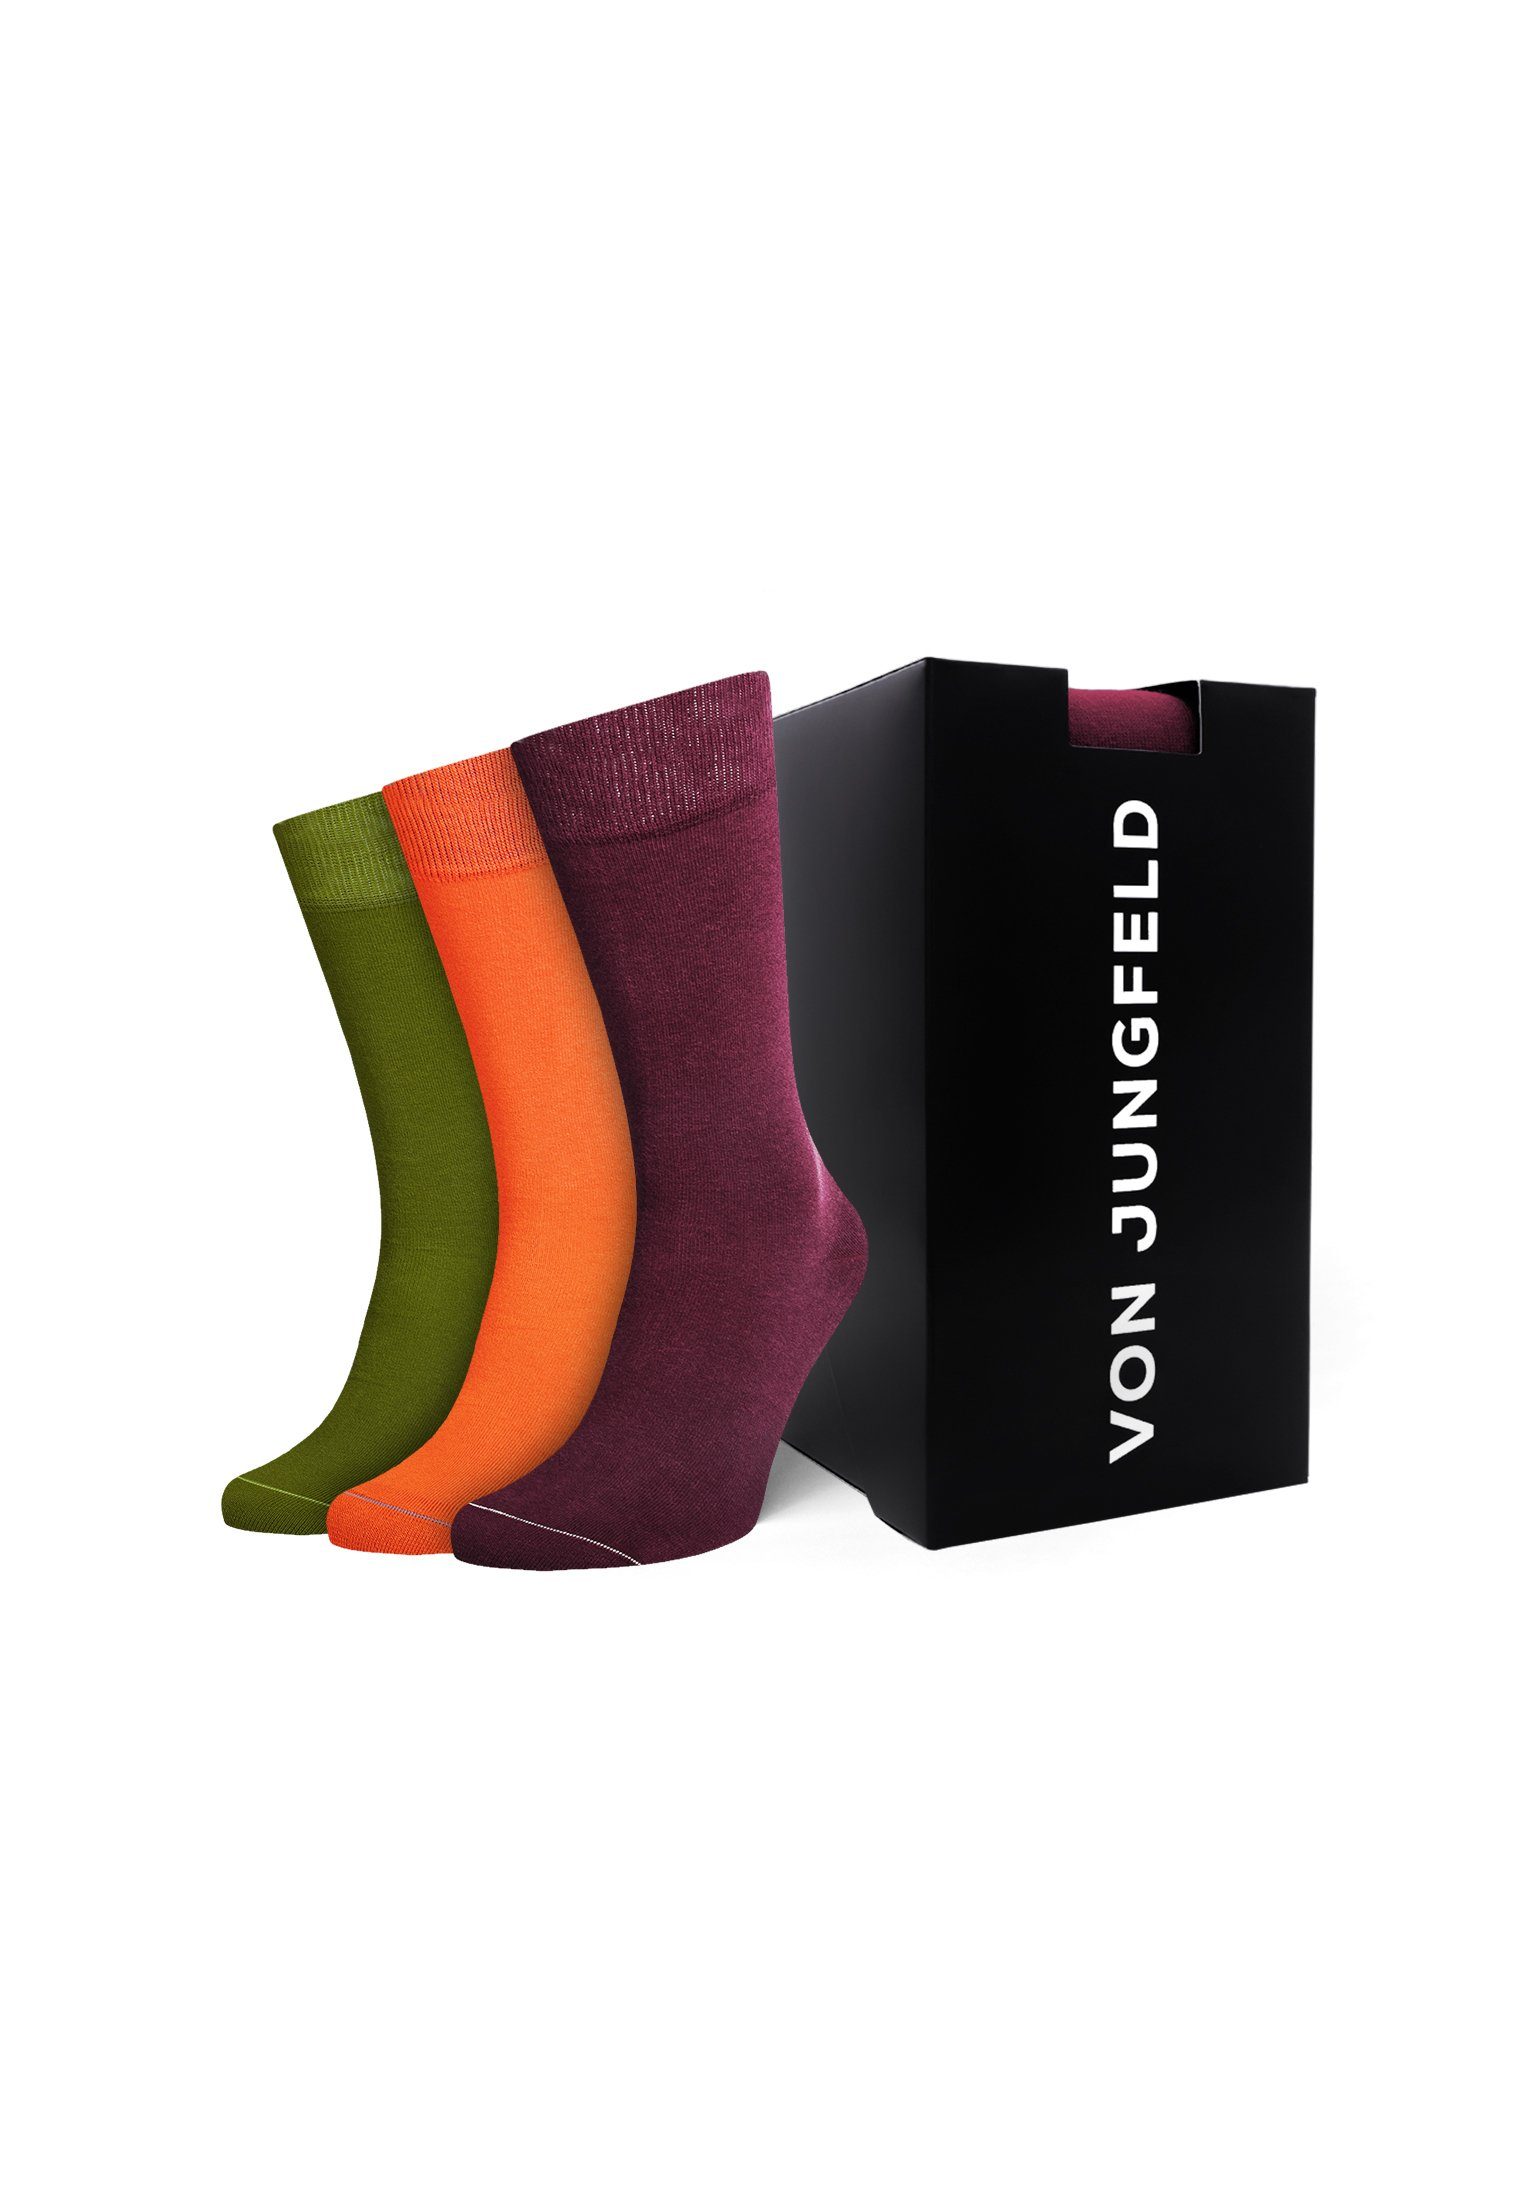 Socken Jungfeld von Box Geschenk